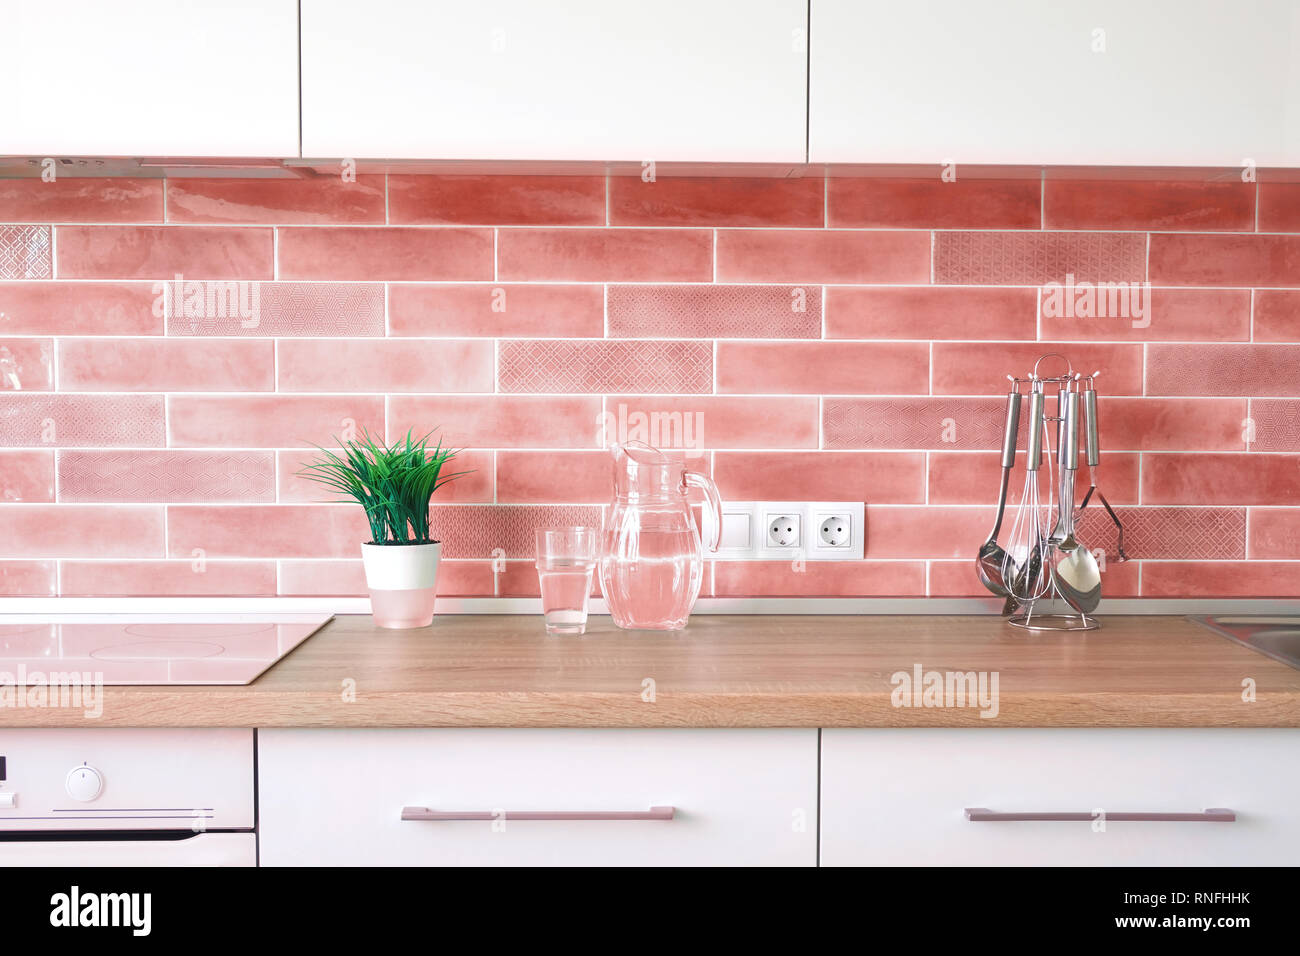 Cuisine moderne à la maison avec des ustensiles et cache-pot sur un haut  mur, et dans une couleur tendance de l'année 2019 de coraux vivants Pantone  Photo Stock - Alamy